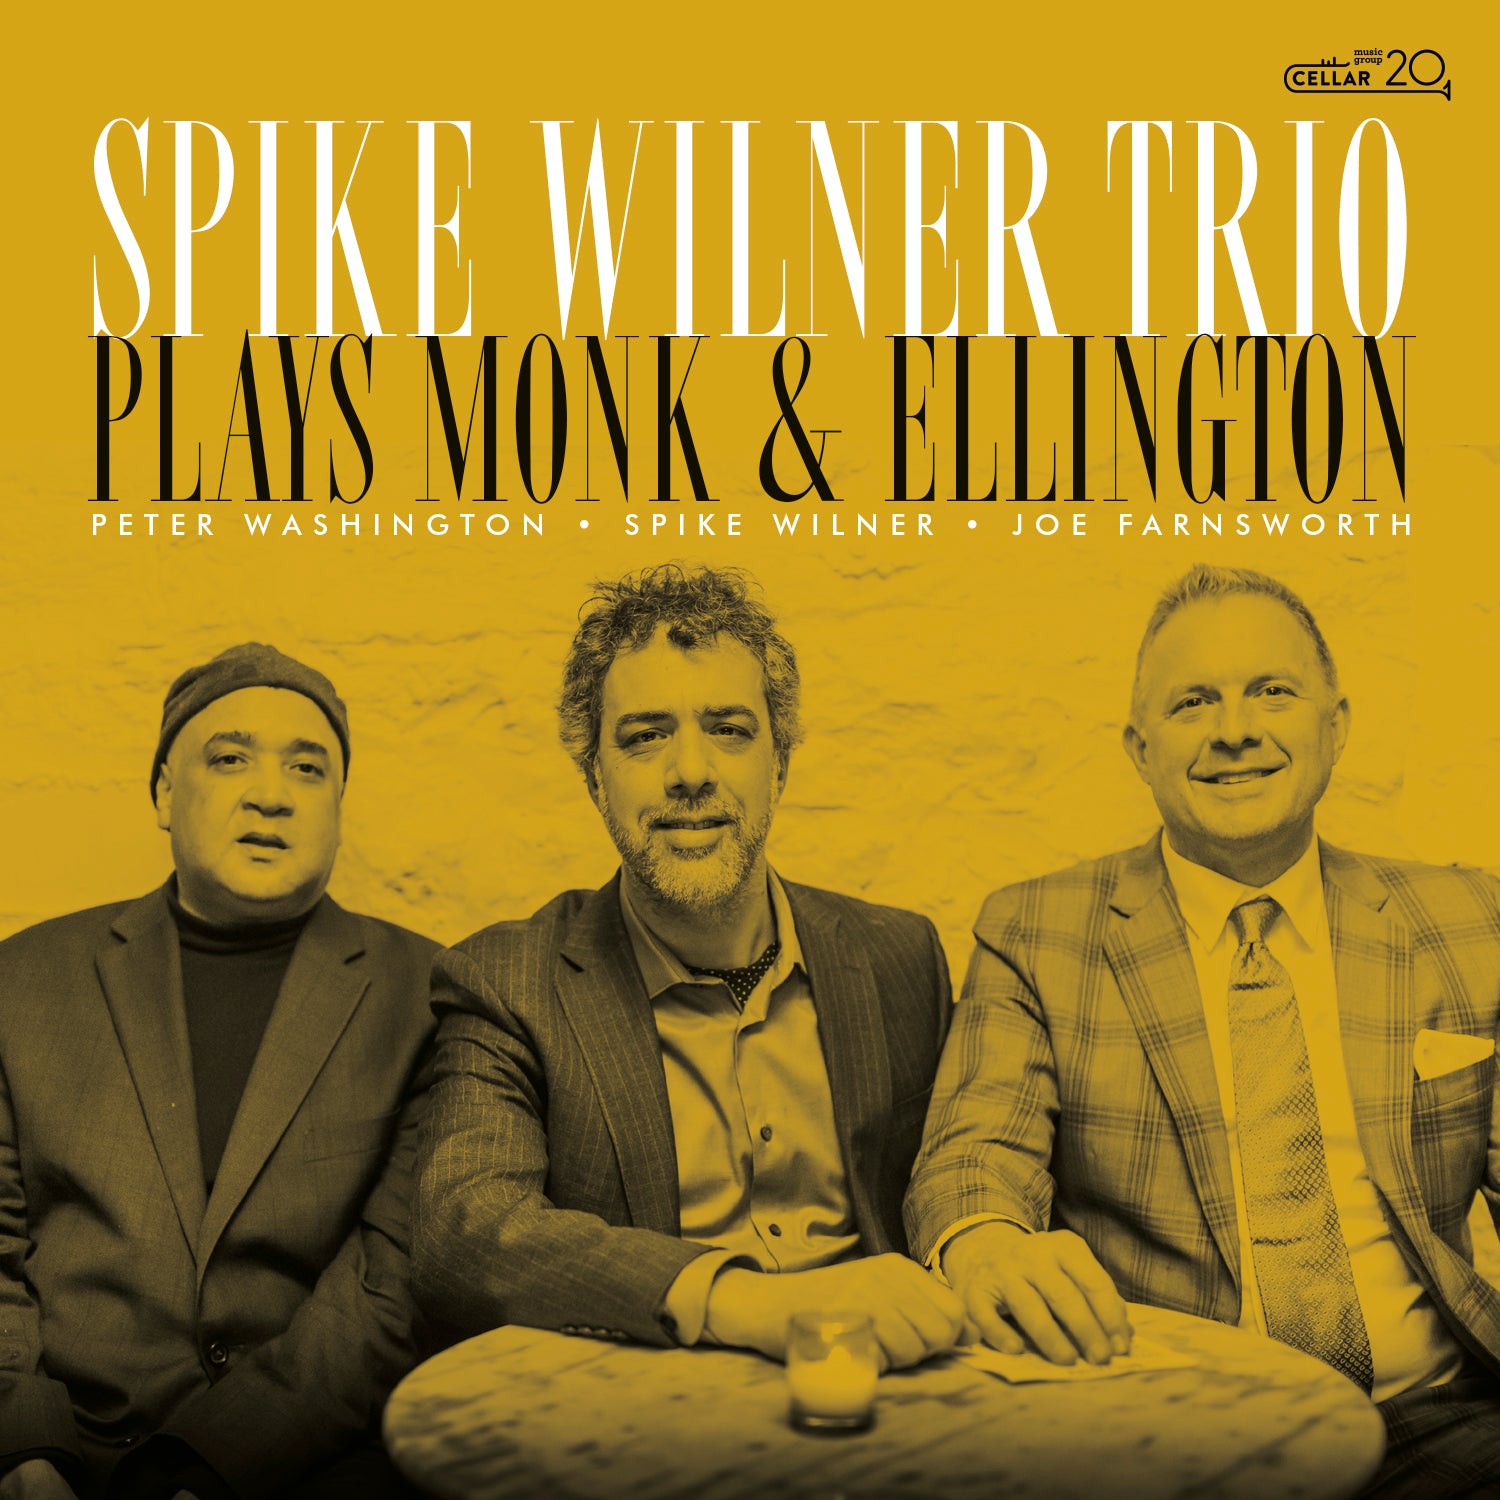 SPIKE WILNER TRIO - Play Monk & Ellington